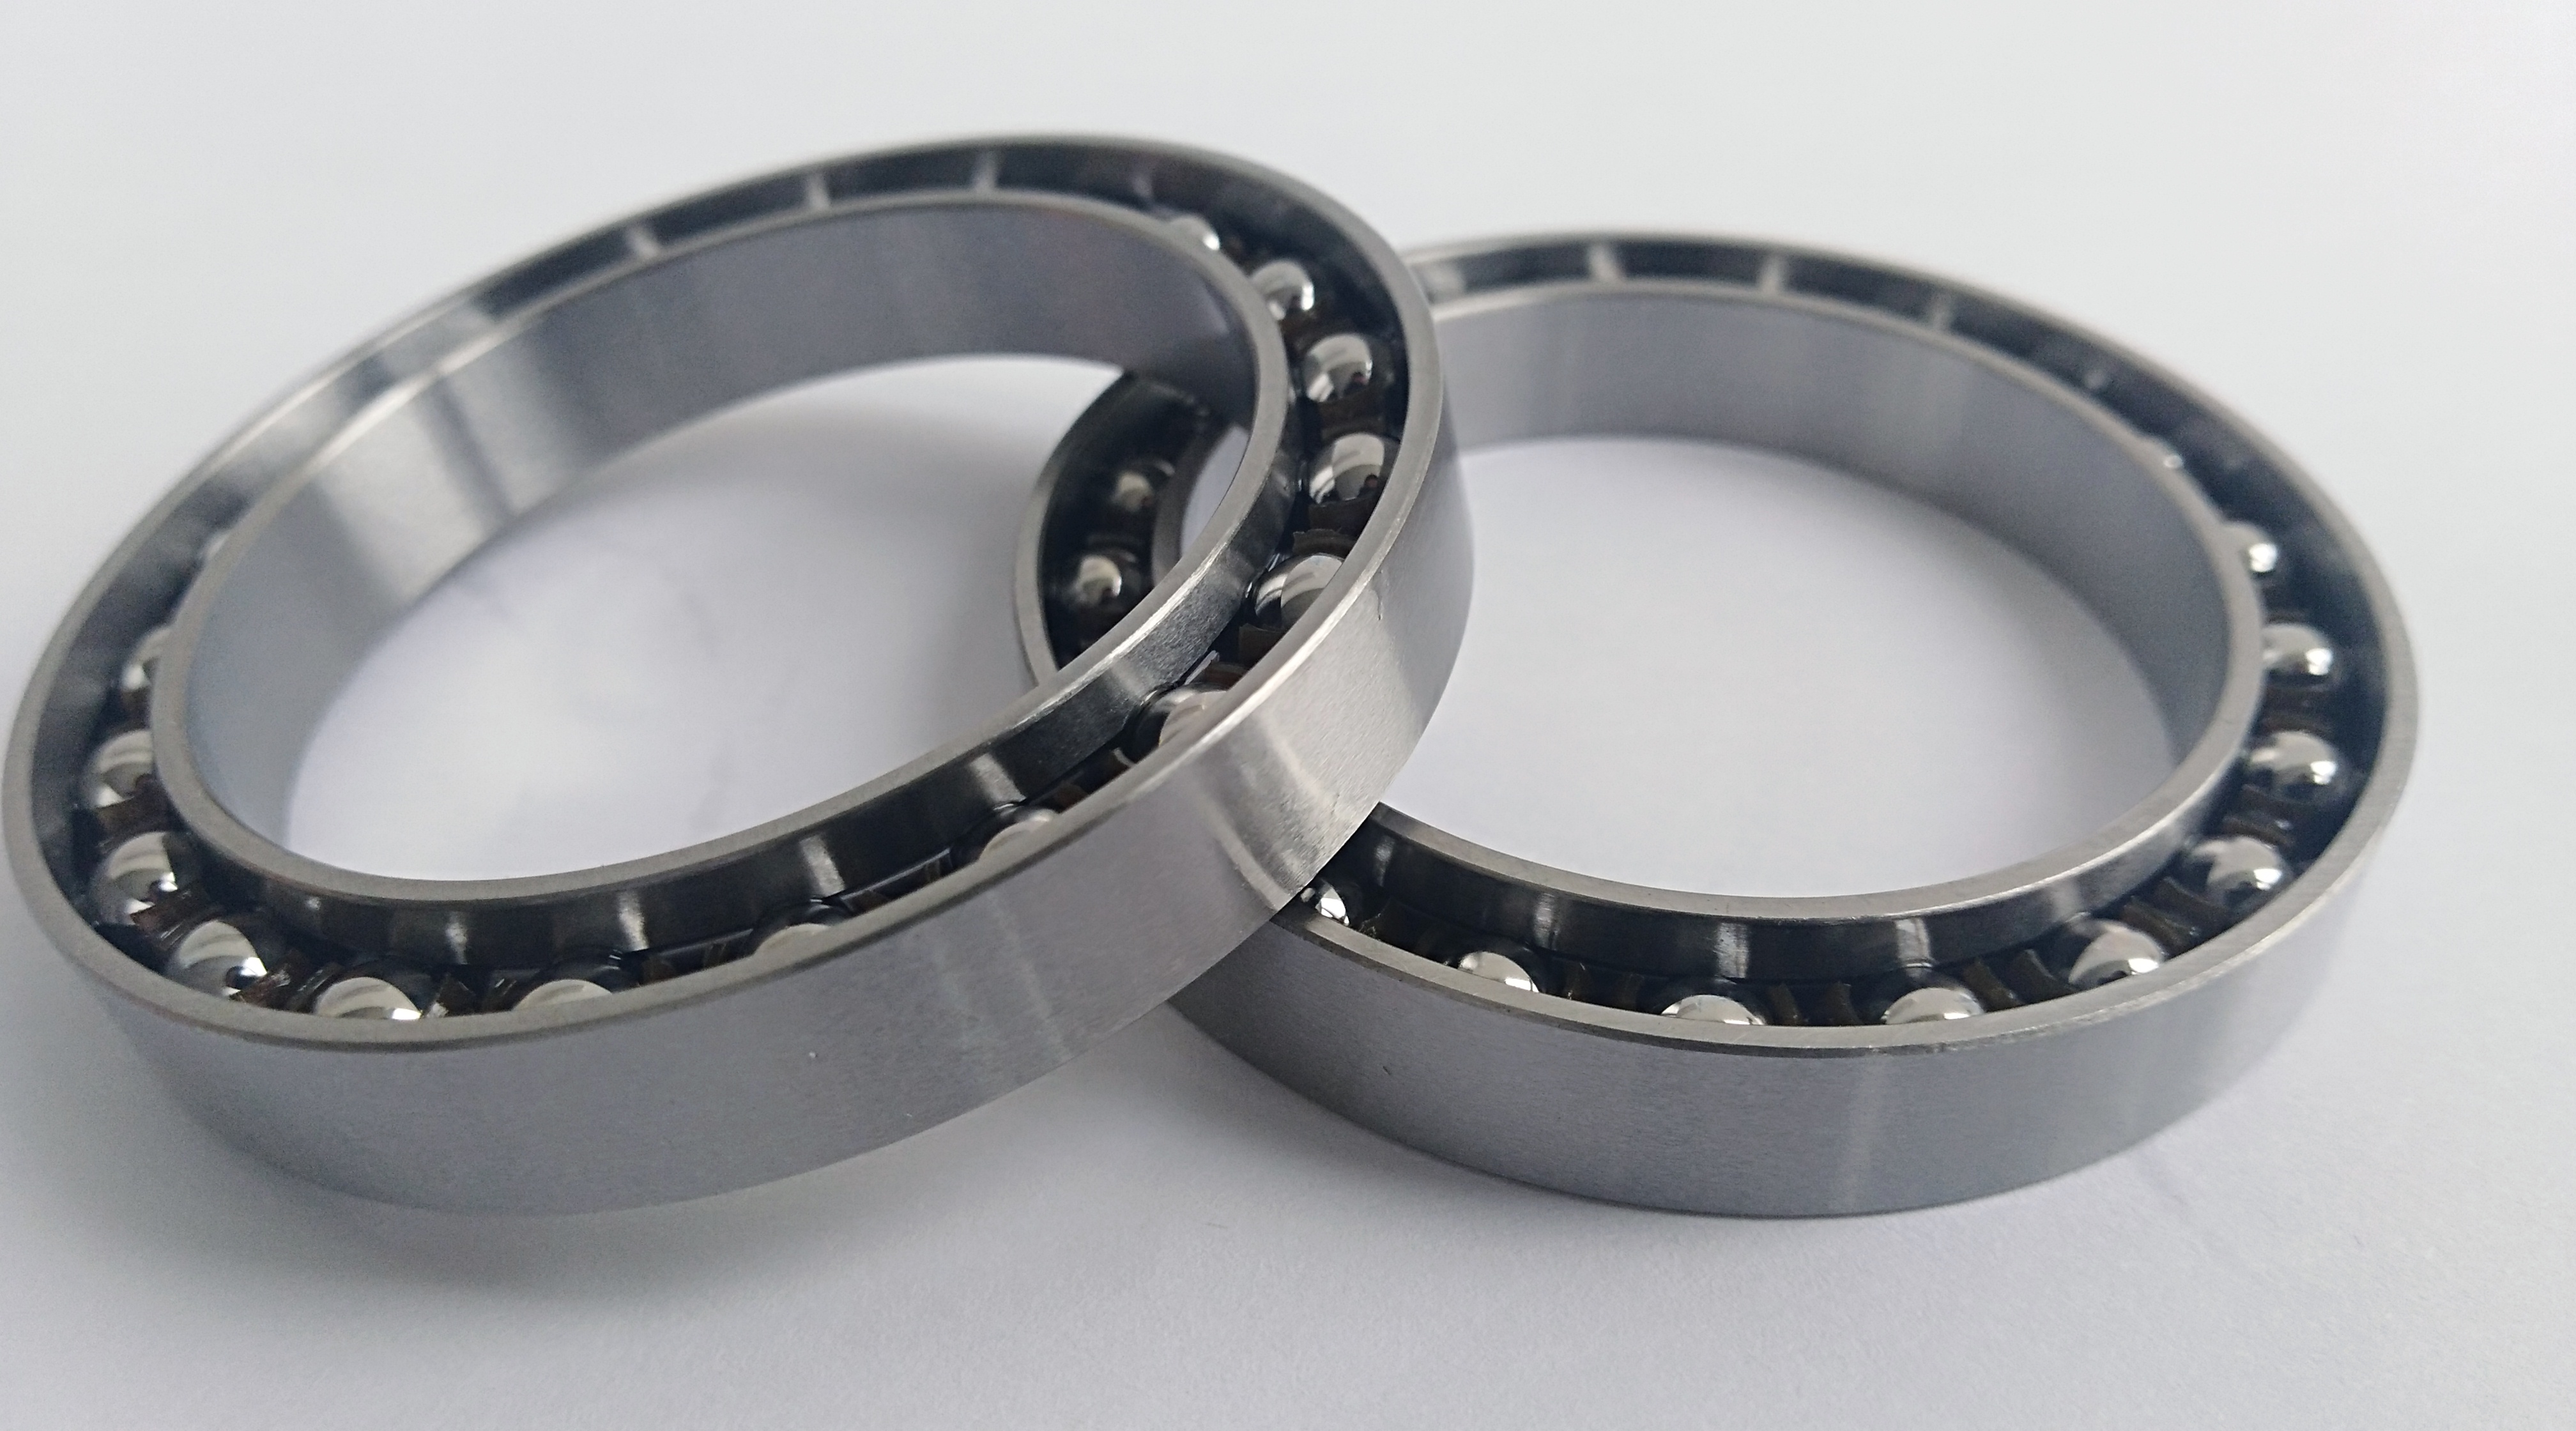  φ49.06*35.55*7.2/8.1 mm Flexible bearings for harmonic drive reducer